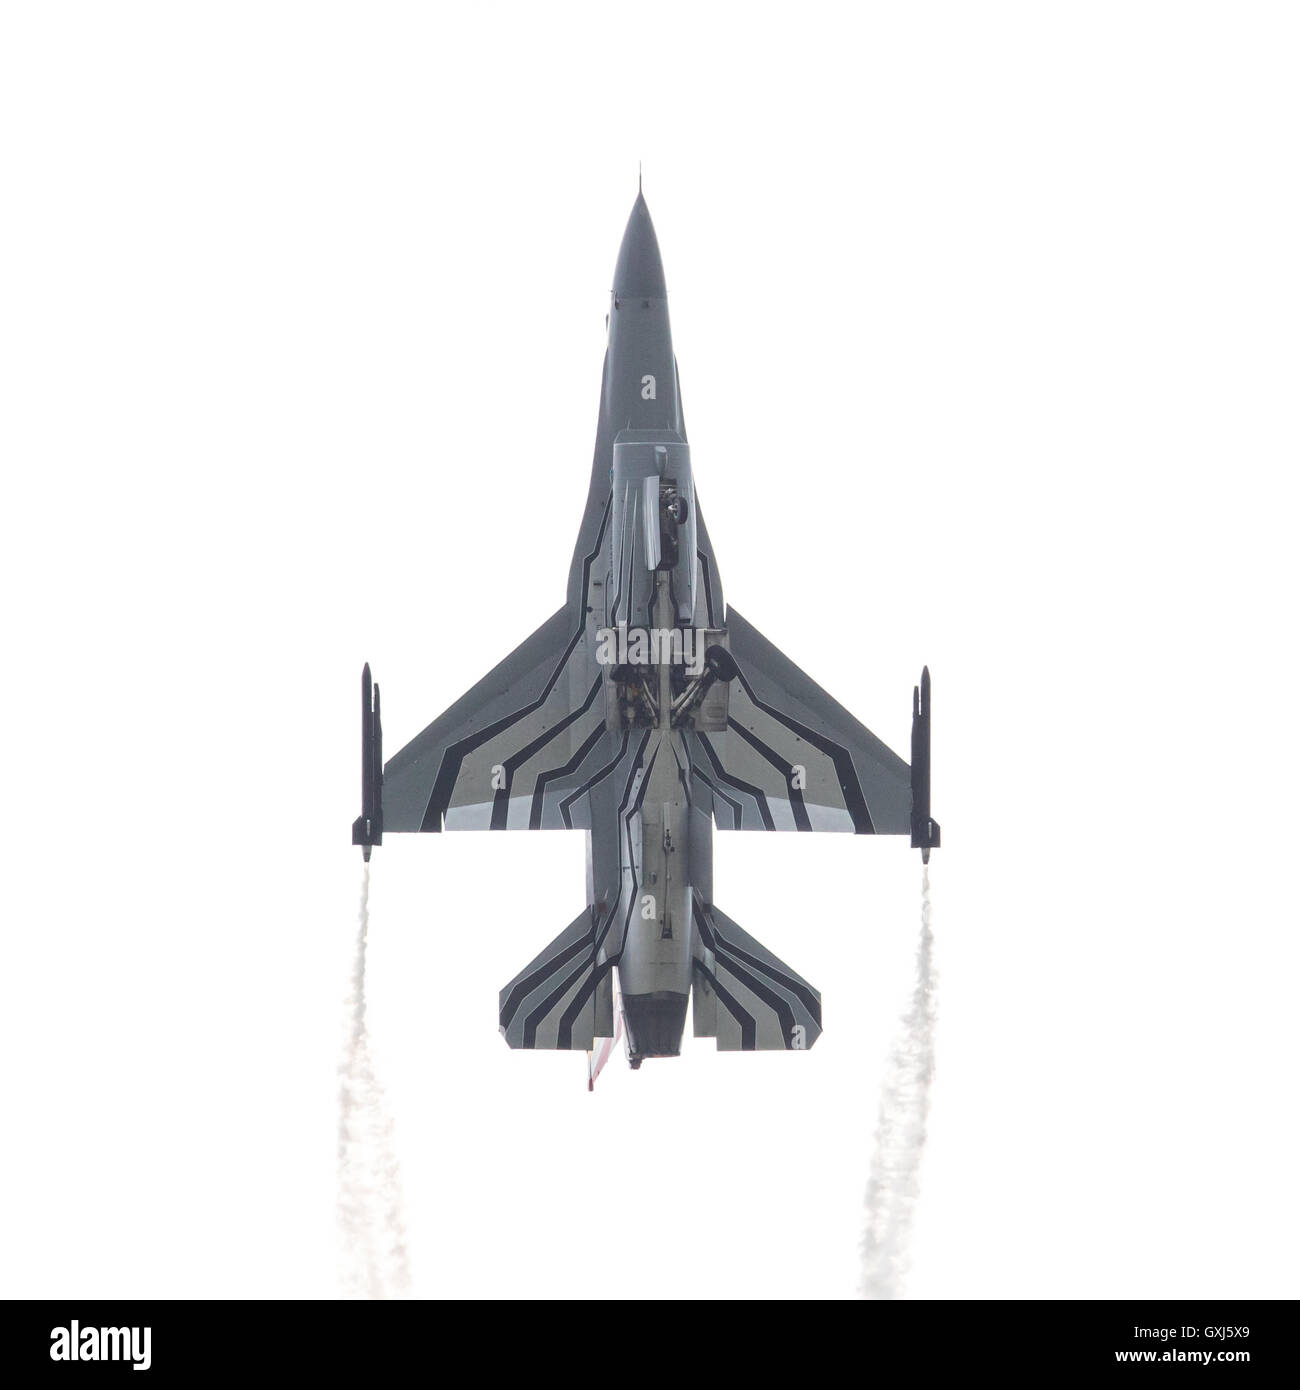 LEEUWARDEN, die Niederlande-10. Juni 2016: Belgien - Air Force General Dynamics f-16 Uhr bei der niederländischen Airshow am 10. Juni 2016 an Stockfoto